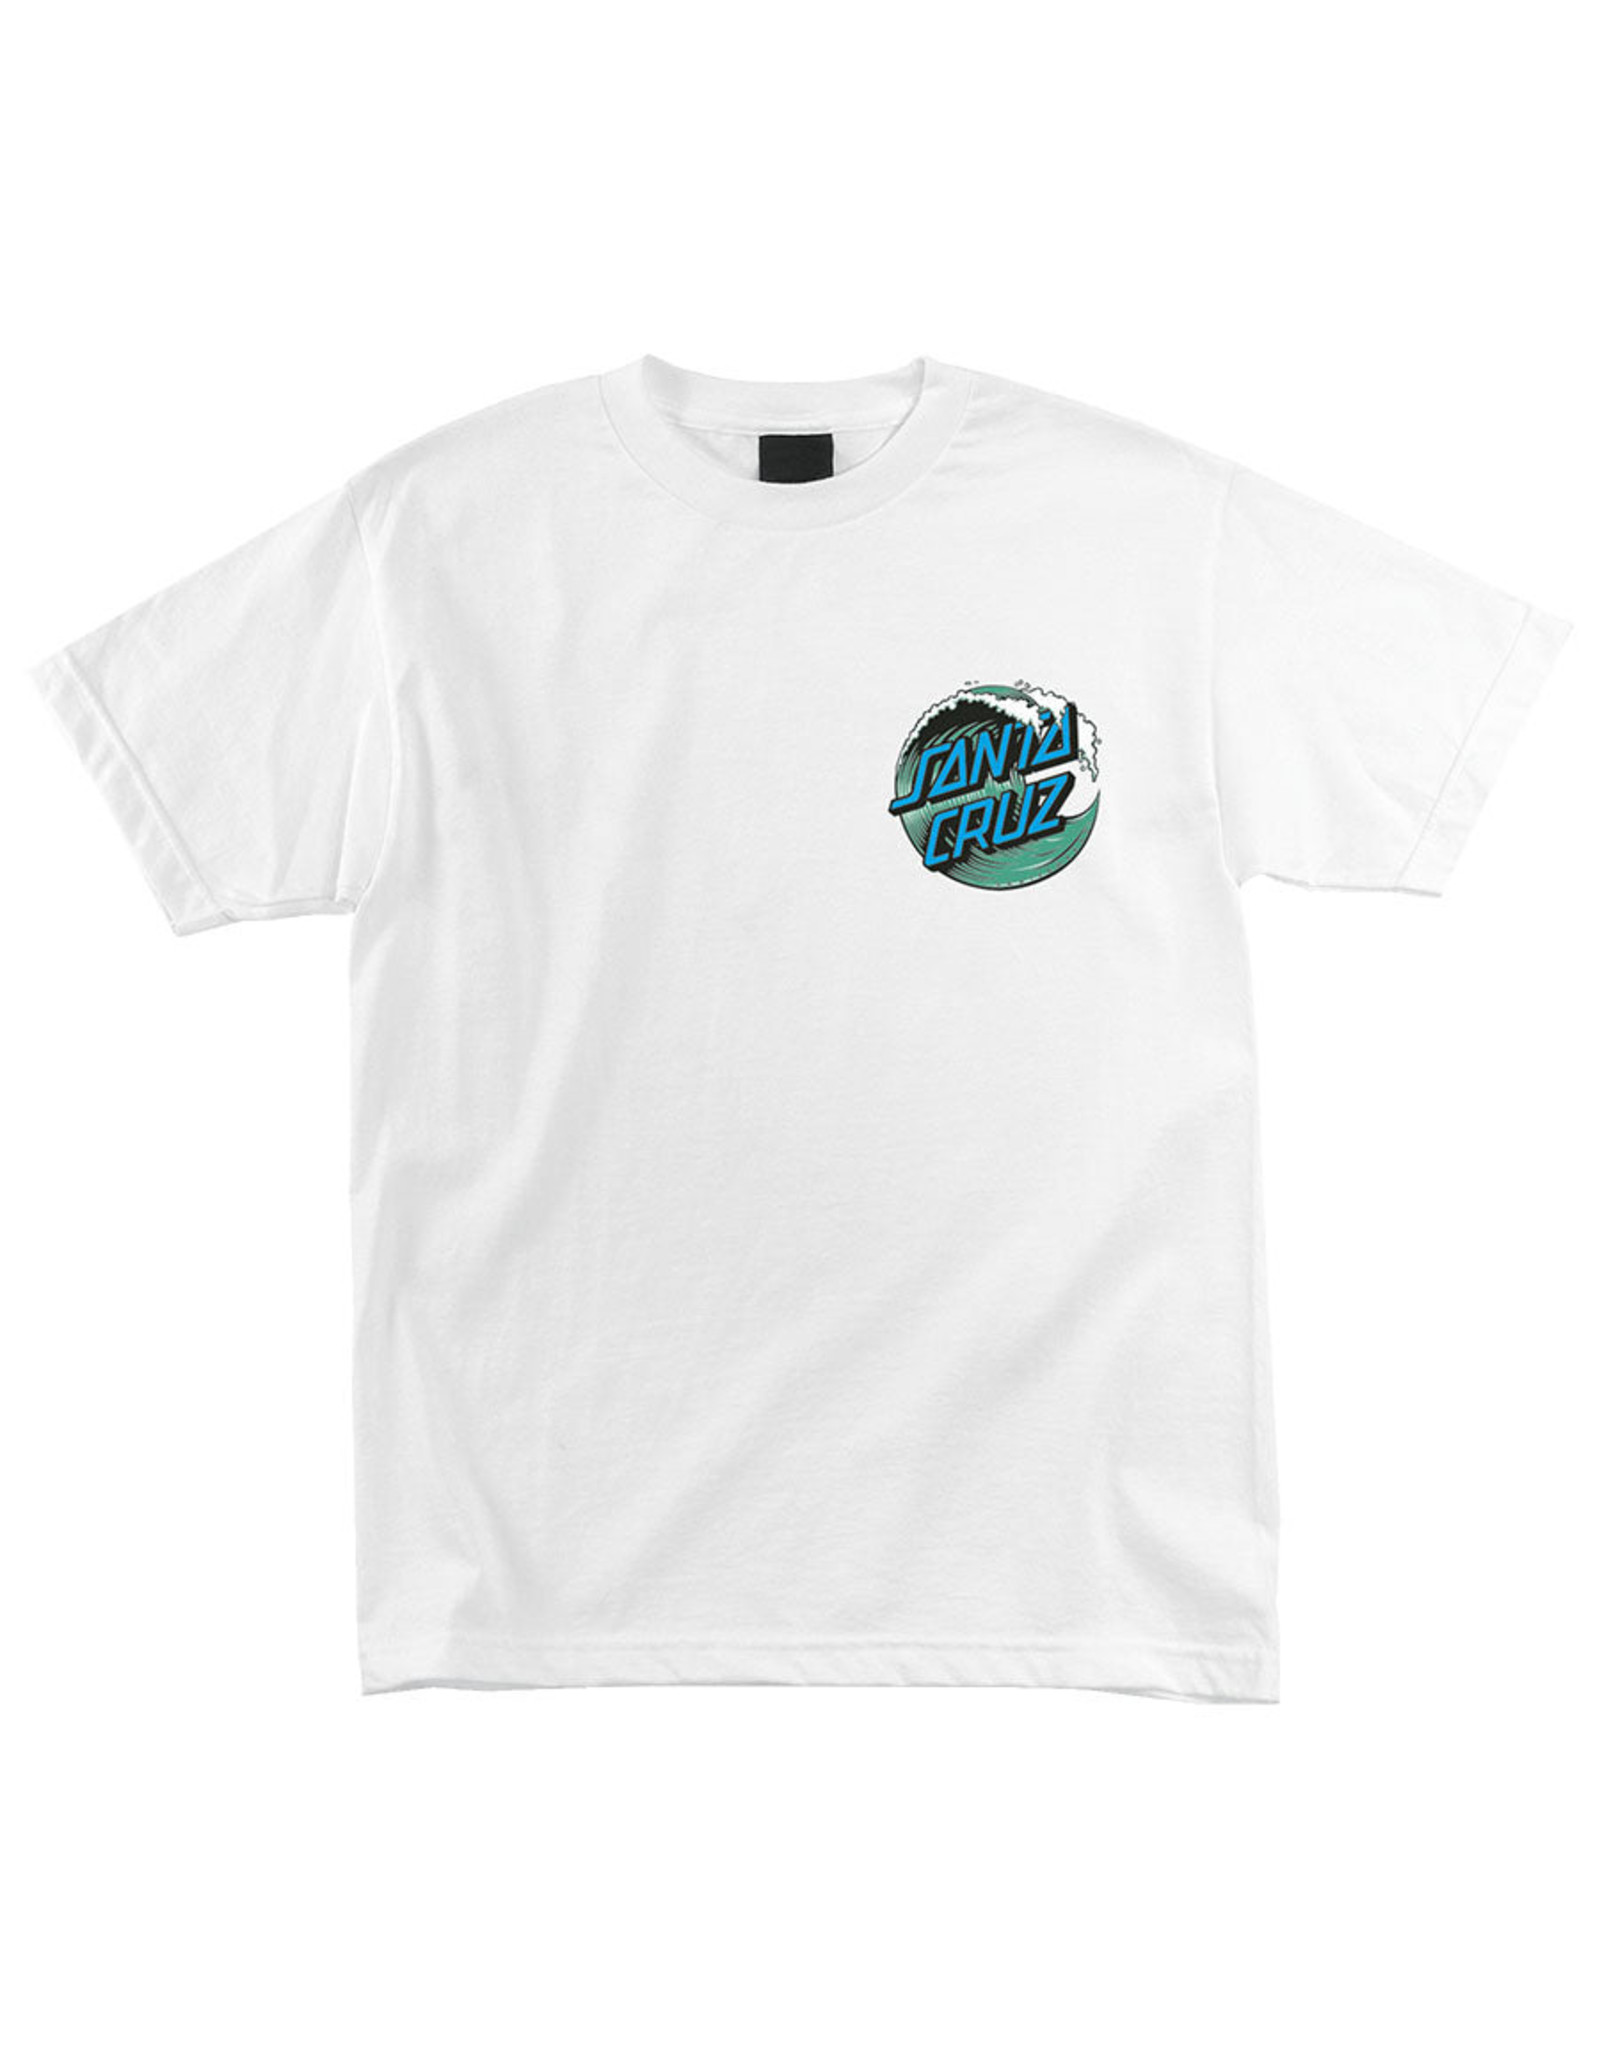 Santa Cruz Wave Dot Short Sleeve T-Shirt